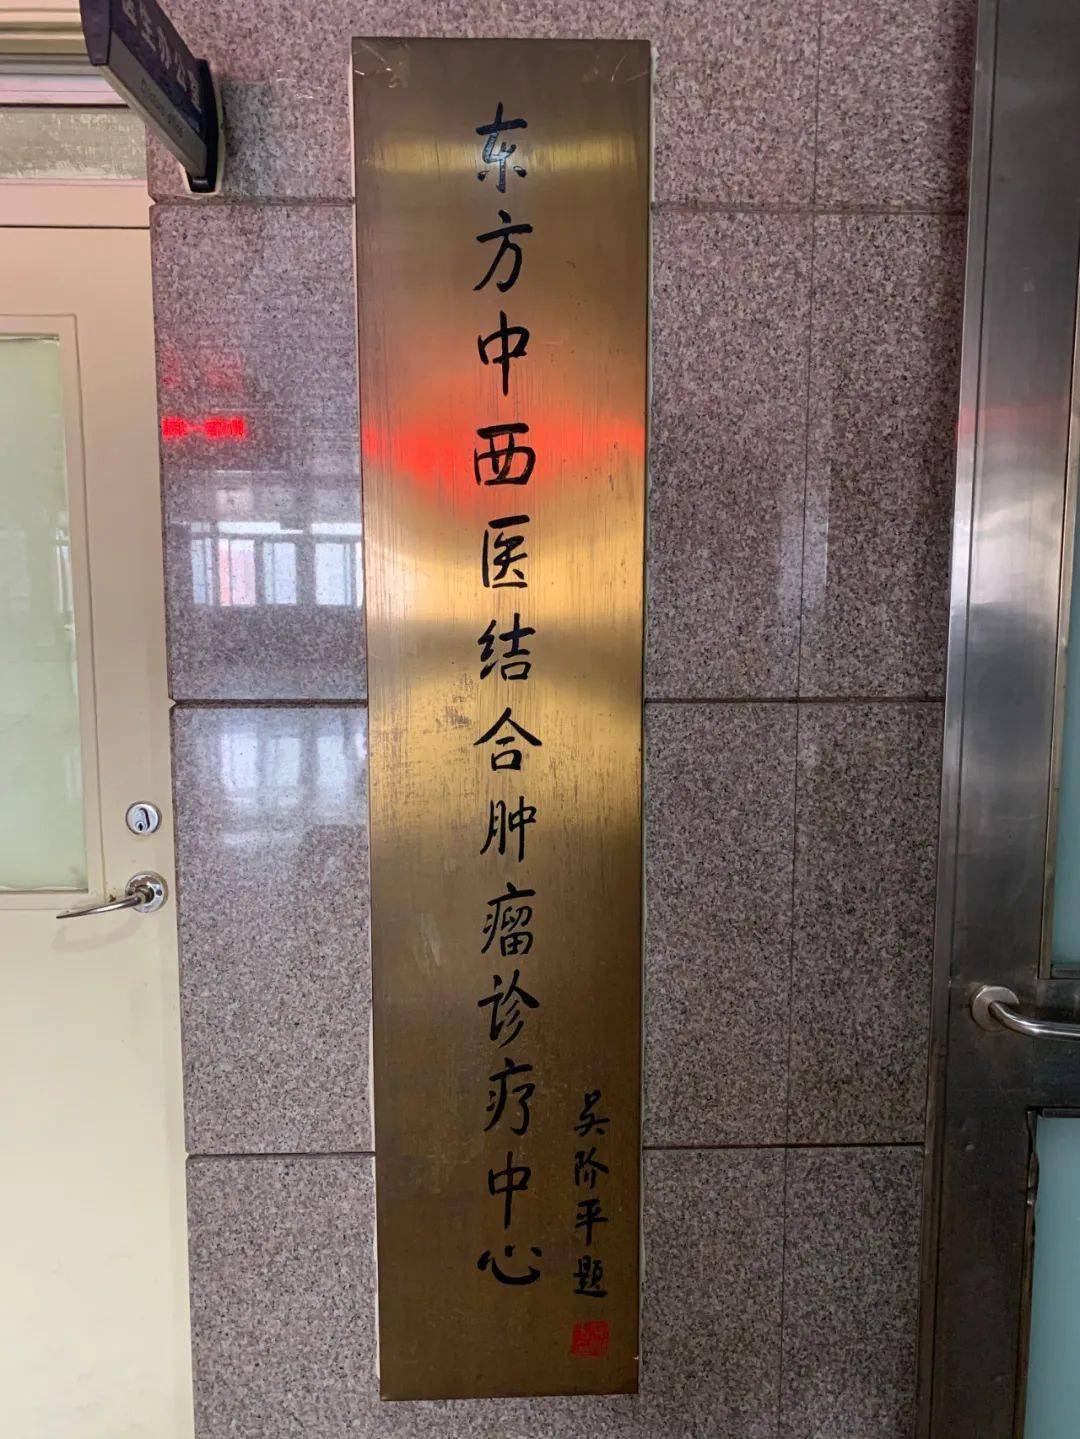 包含北京中医药大学东方医院"医院黄牛挂号被骗了怎么投诉",的词条